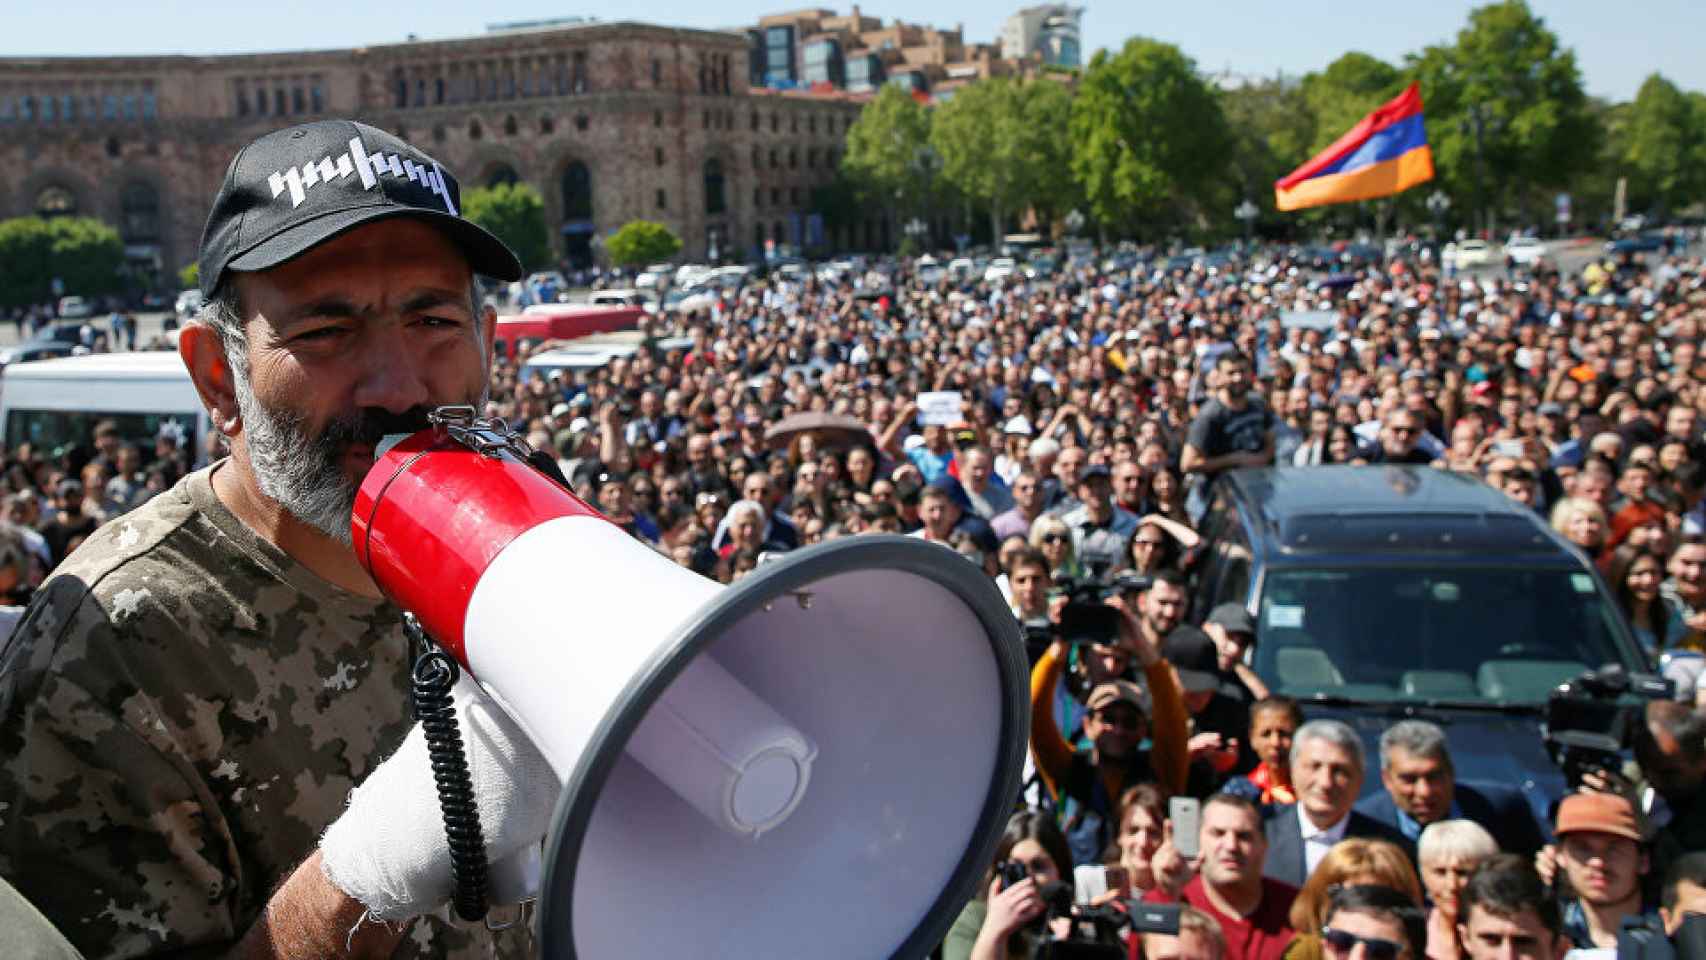 Pashinián habla por un megáfono durante las protestas en la plaza de la República, la primavera de 2018.